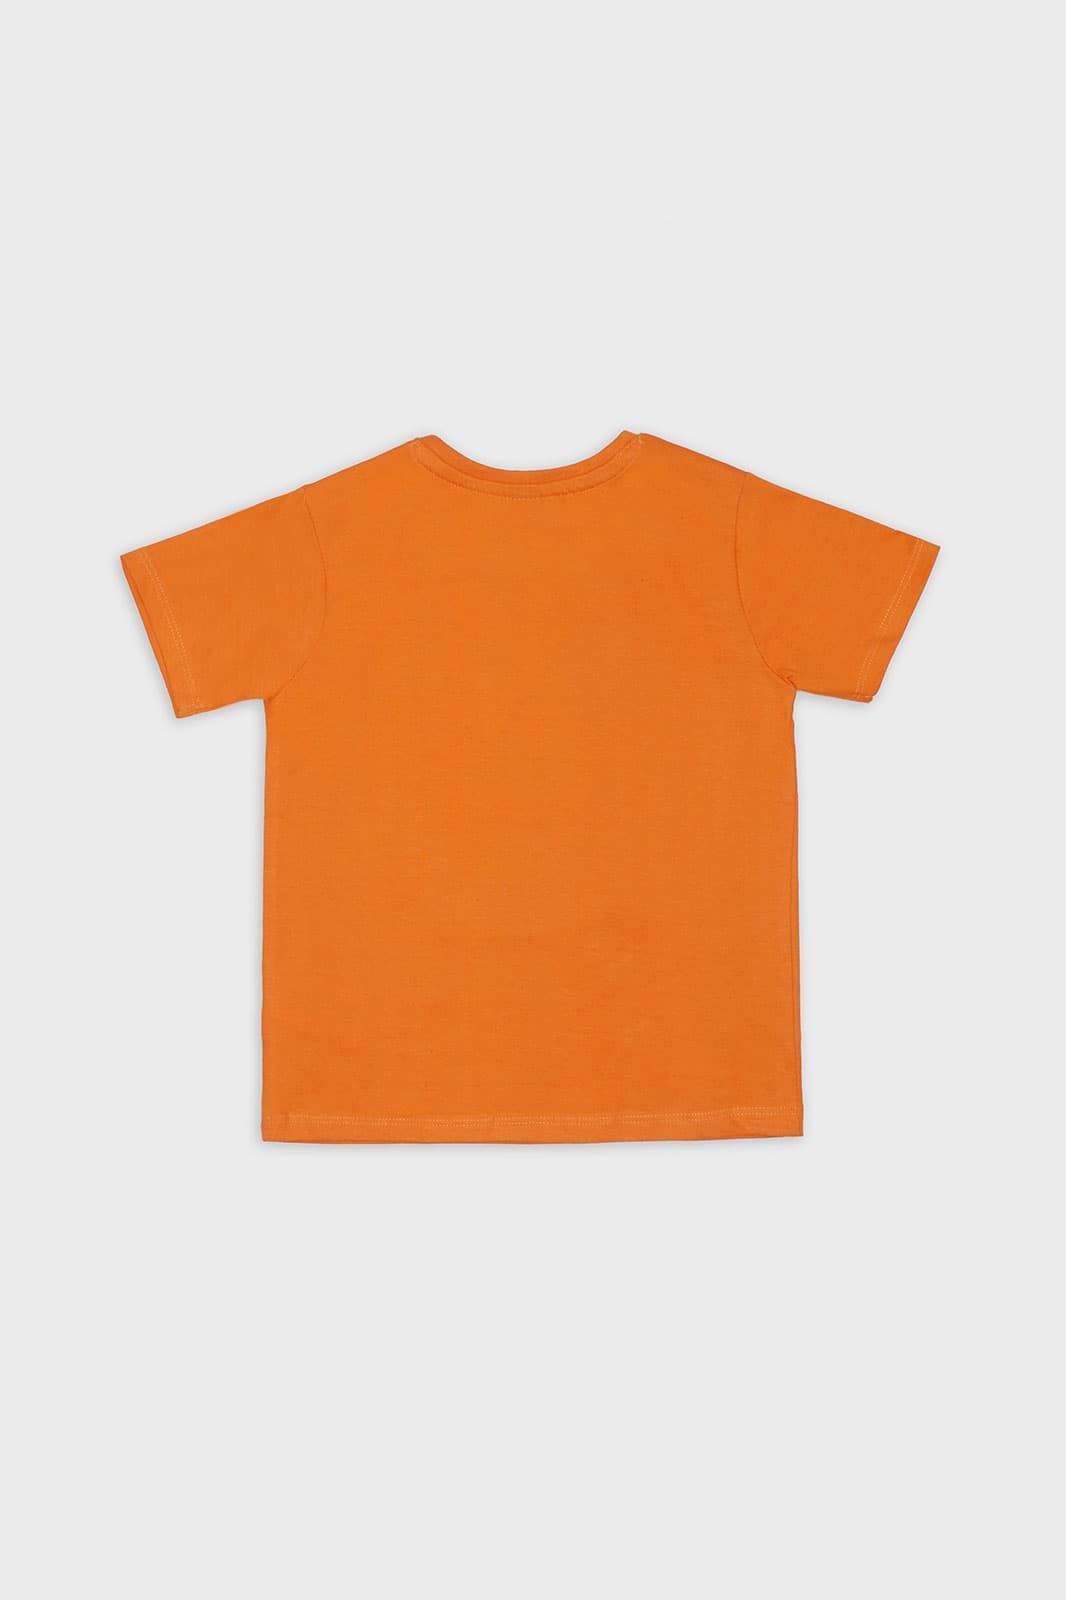 Camiseta niño - Imagen 3